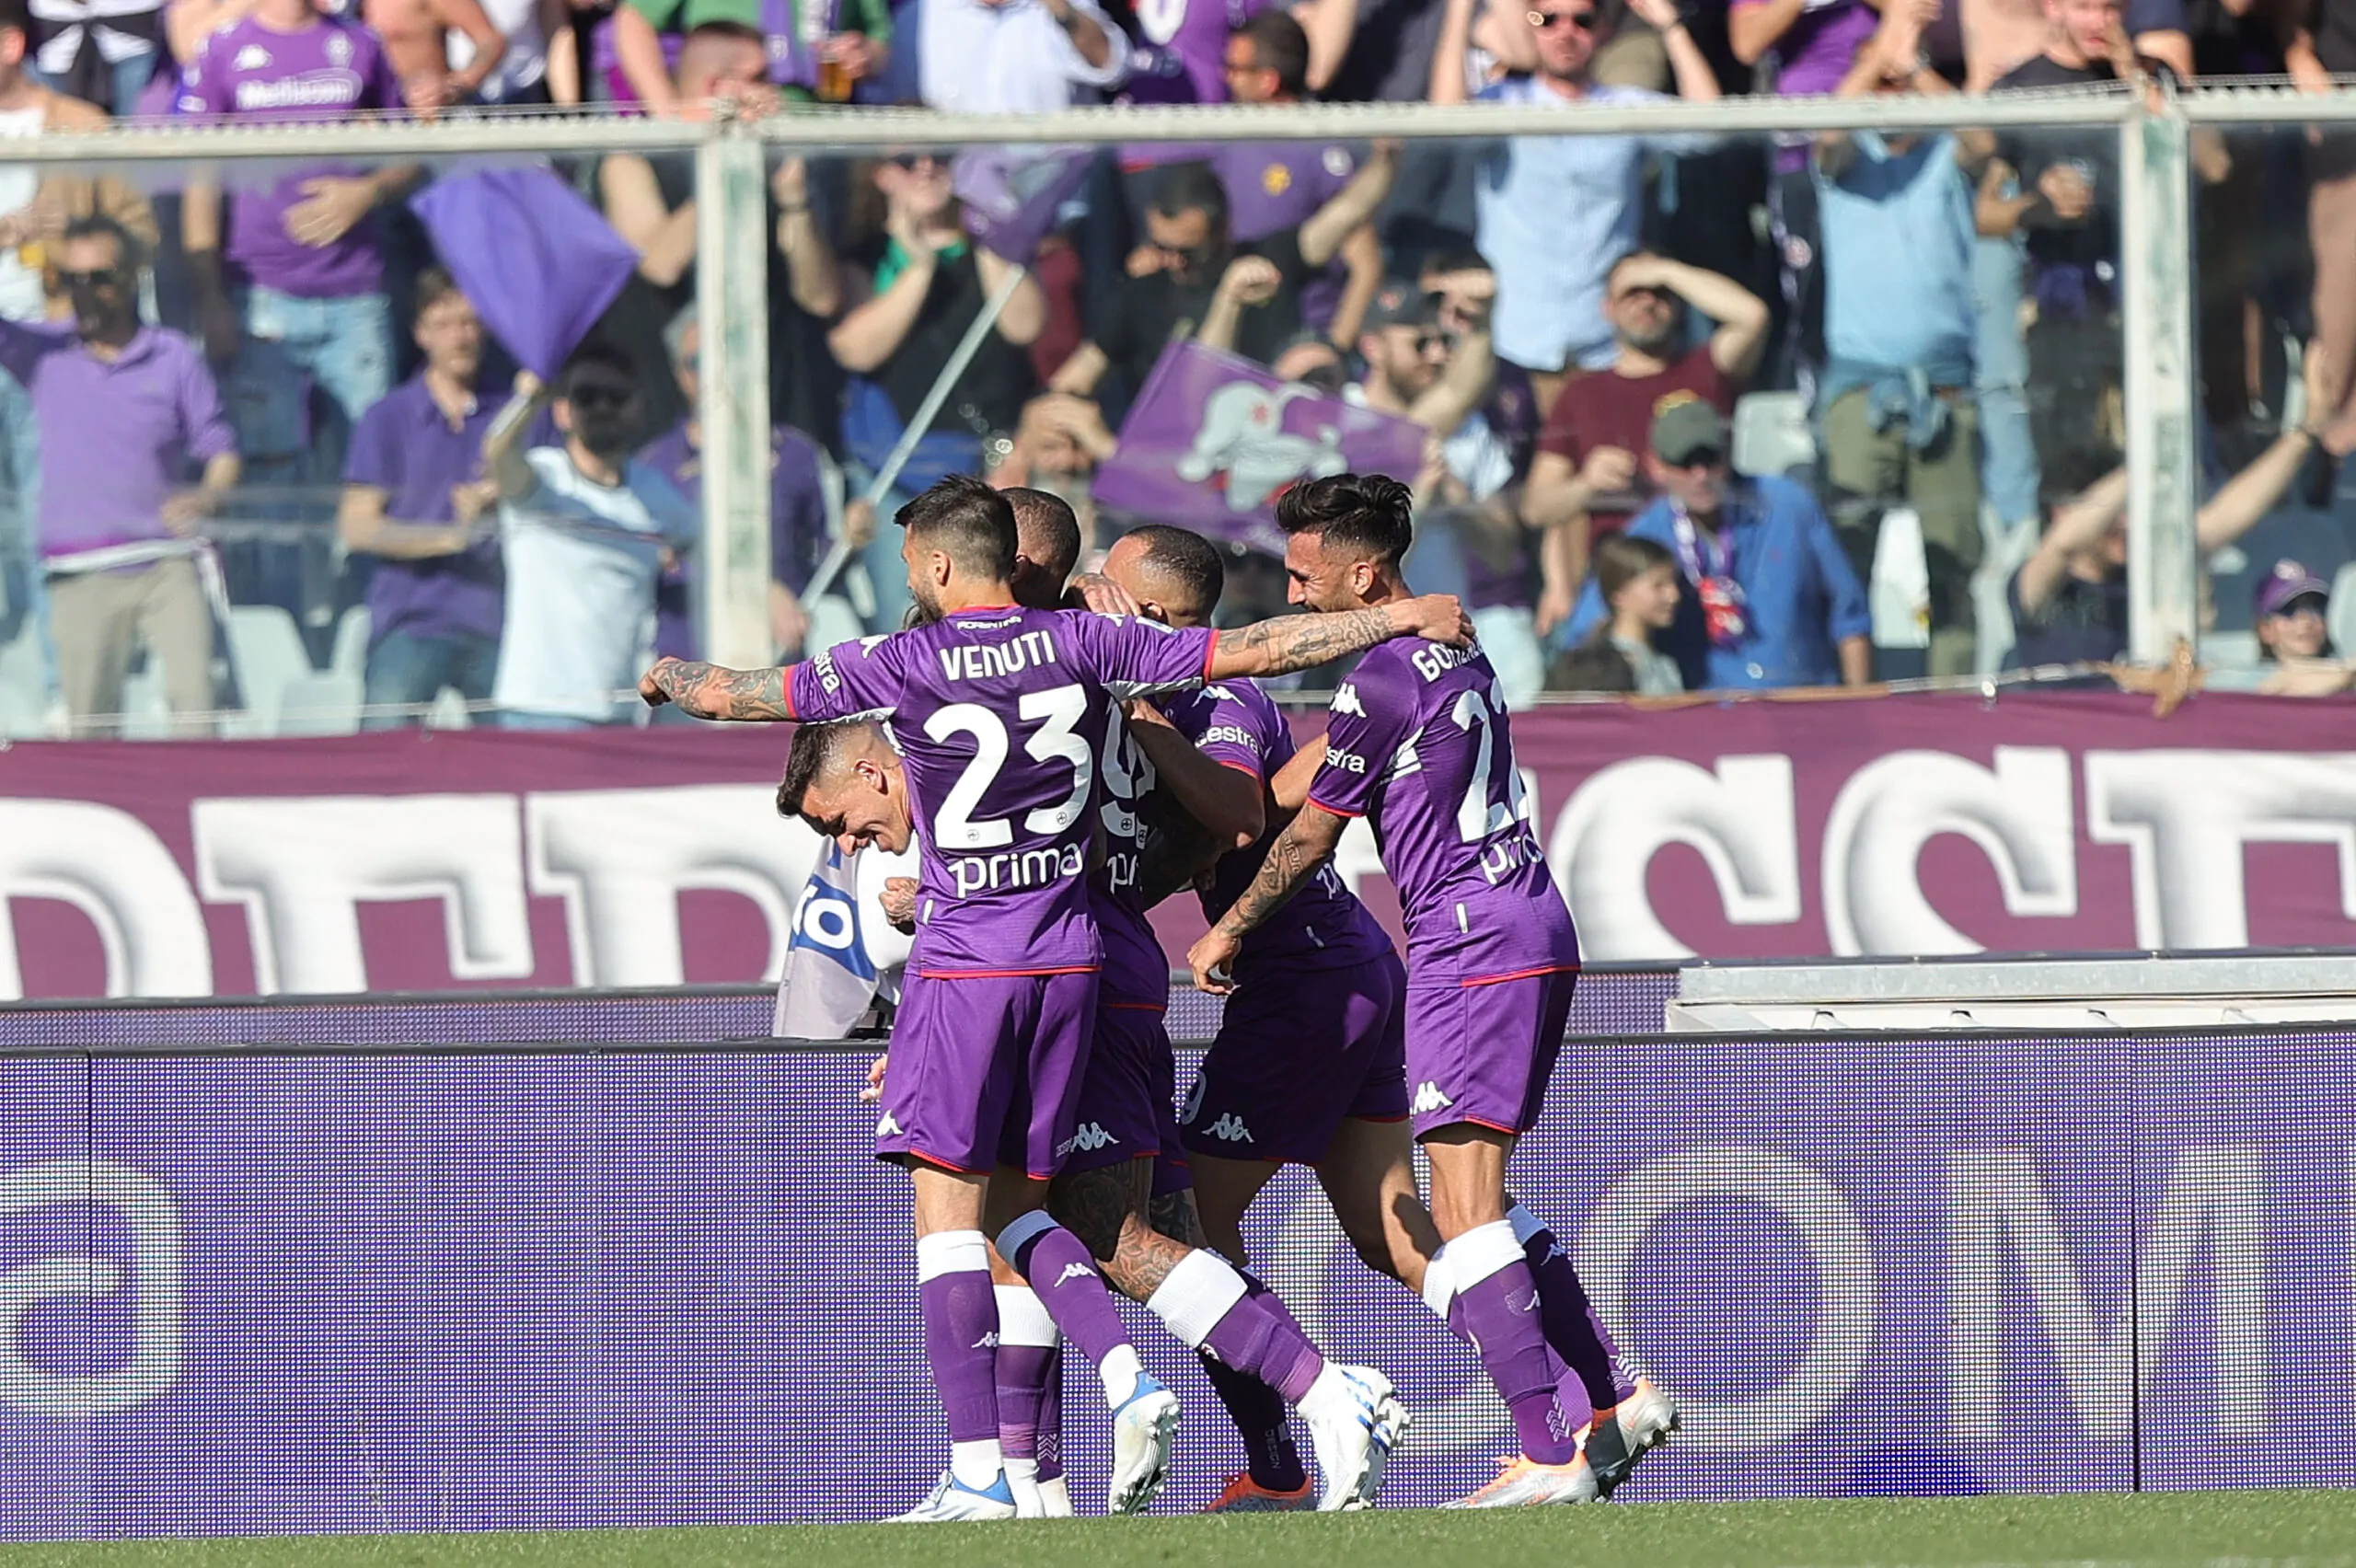 Il giocatore fa sognare la Fiorentina: “Tornerò presto”